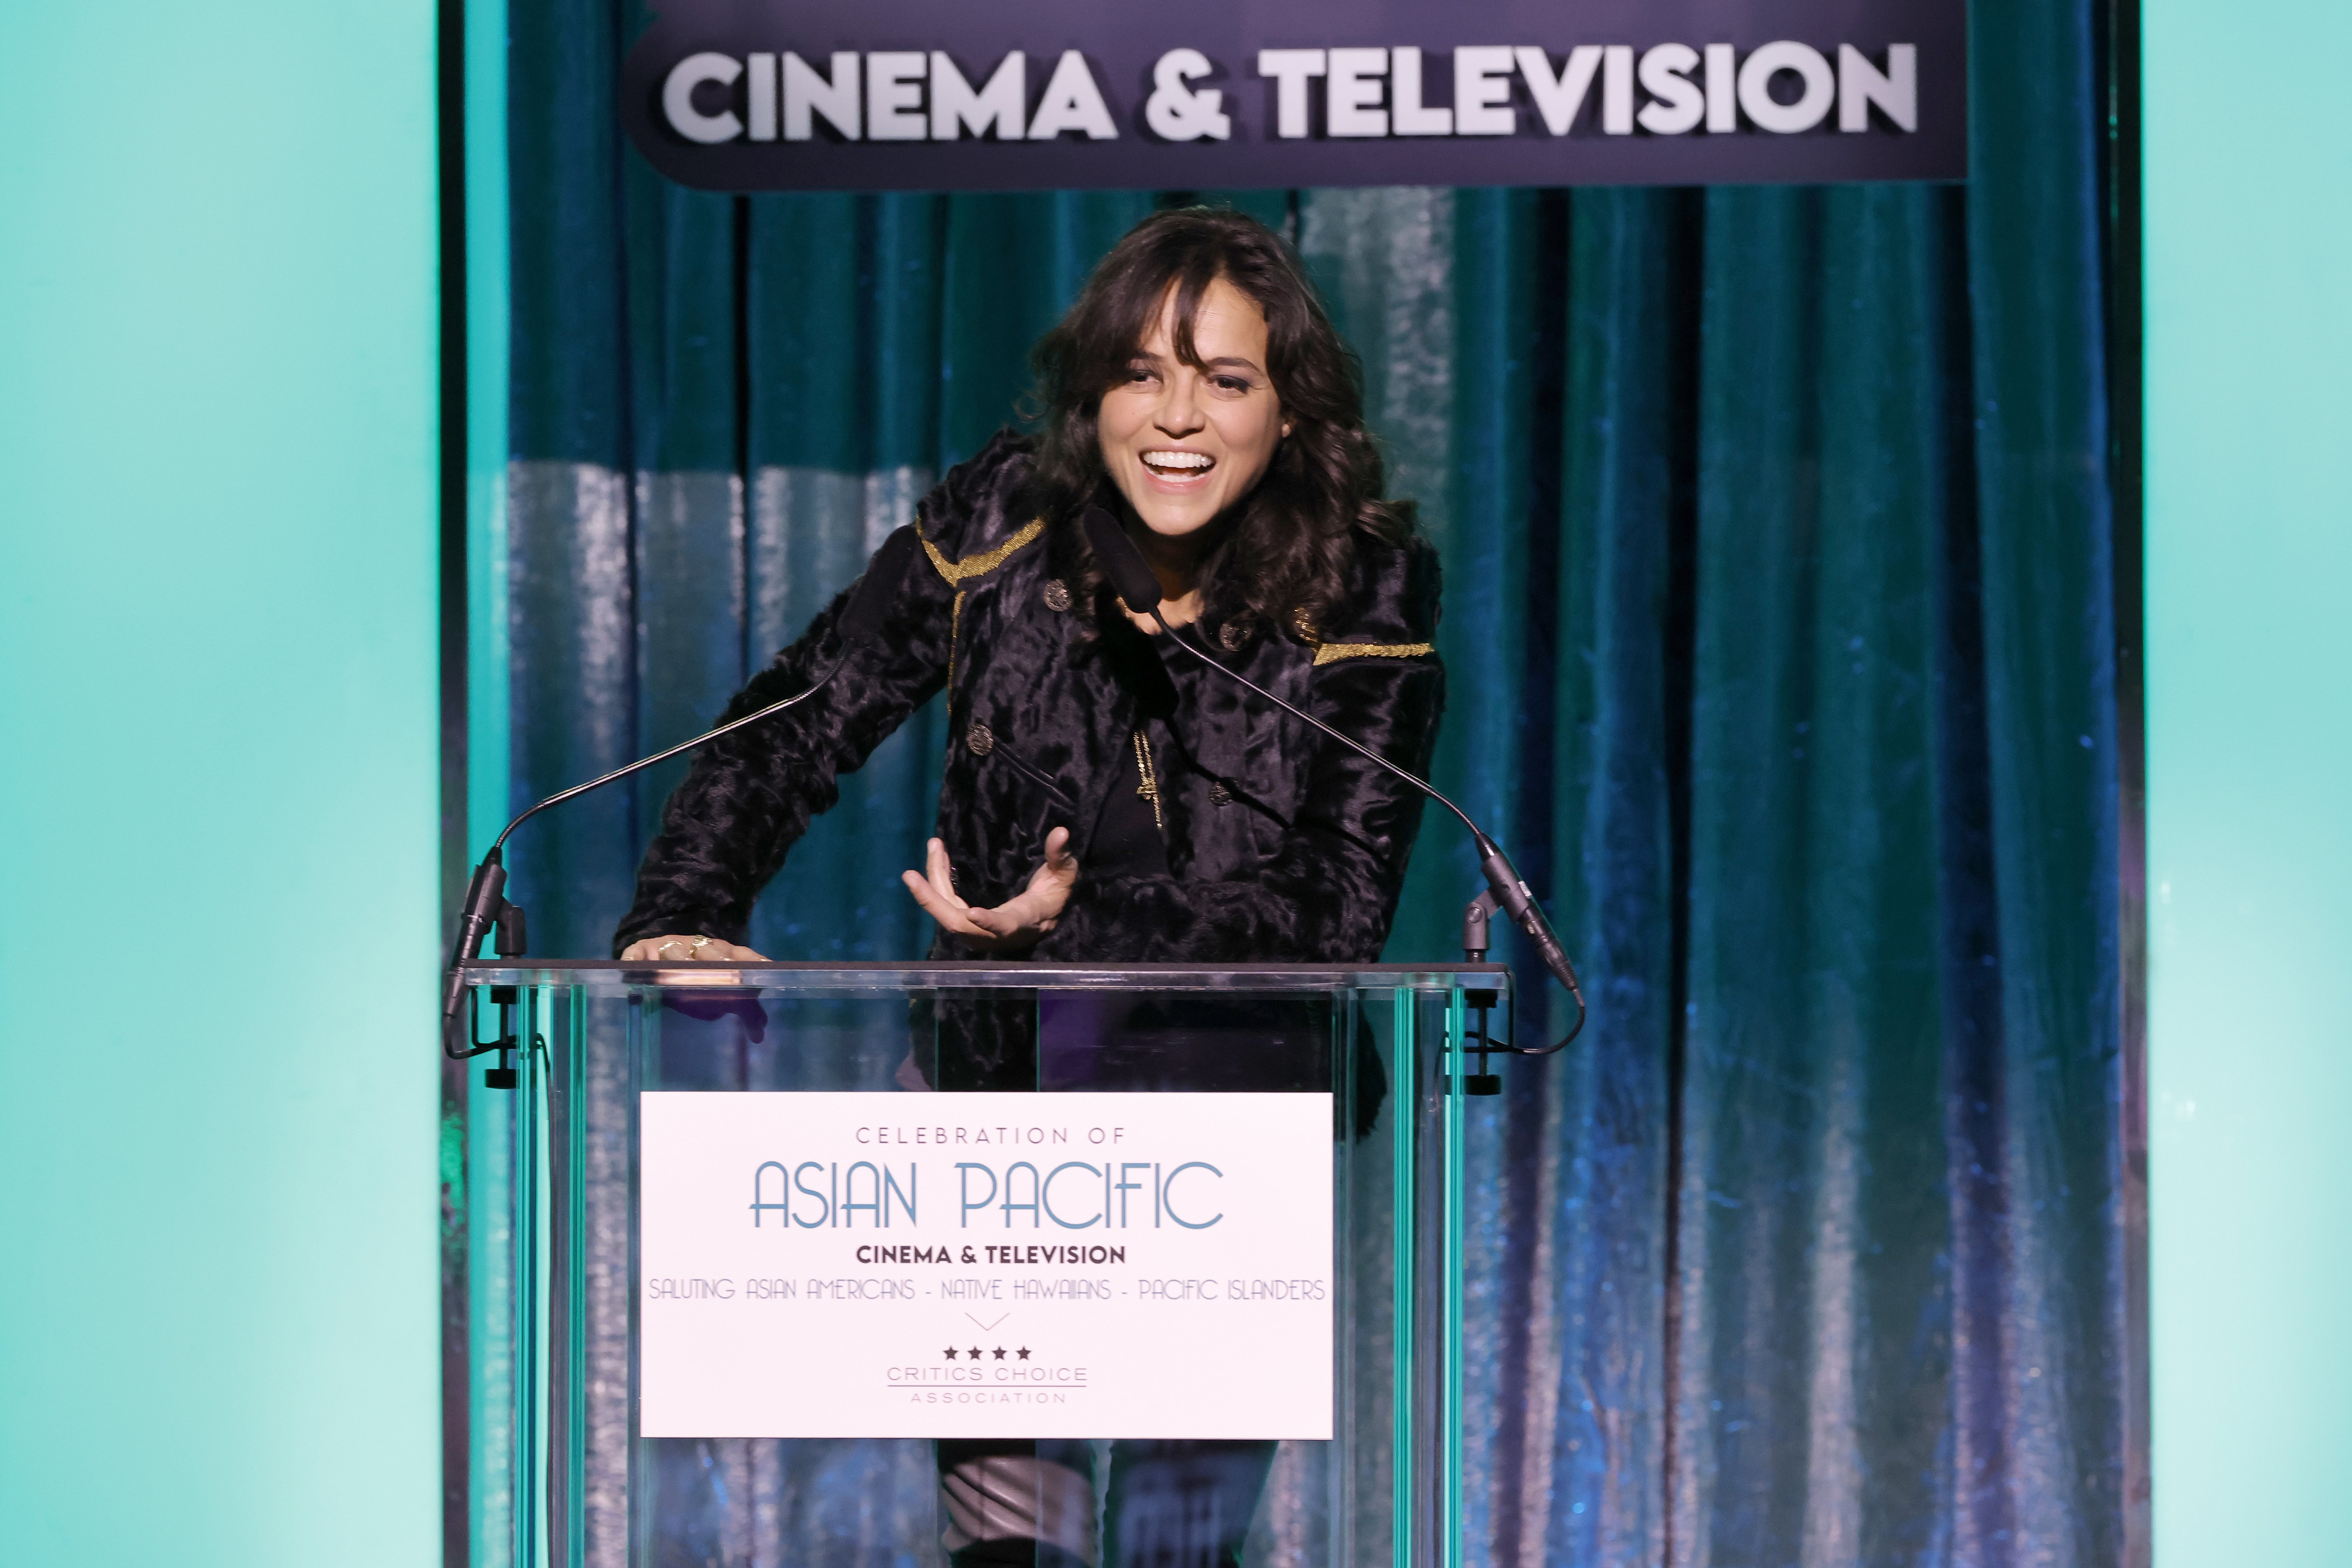 Michelle Rodriguez, Los Angeles, California'da 4 Kasım 2022'de Fairmont Century Plaza'da Eleştirmenlerin Seçimi Derneği'nin düzenlediği Asya Pasifik Sinema ve Televizyon Kutlamasında konuşurken resmedilmiştir |  Kaynak: Getty Images